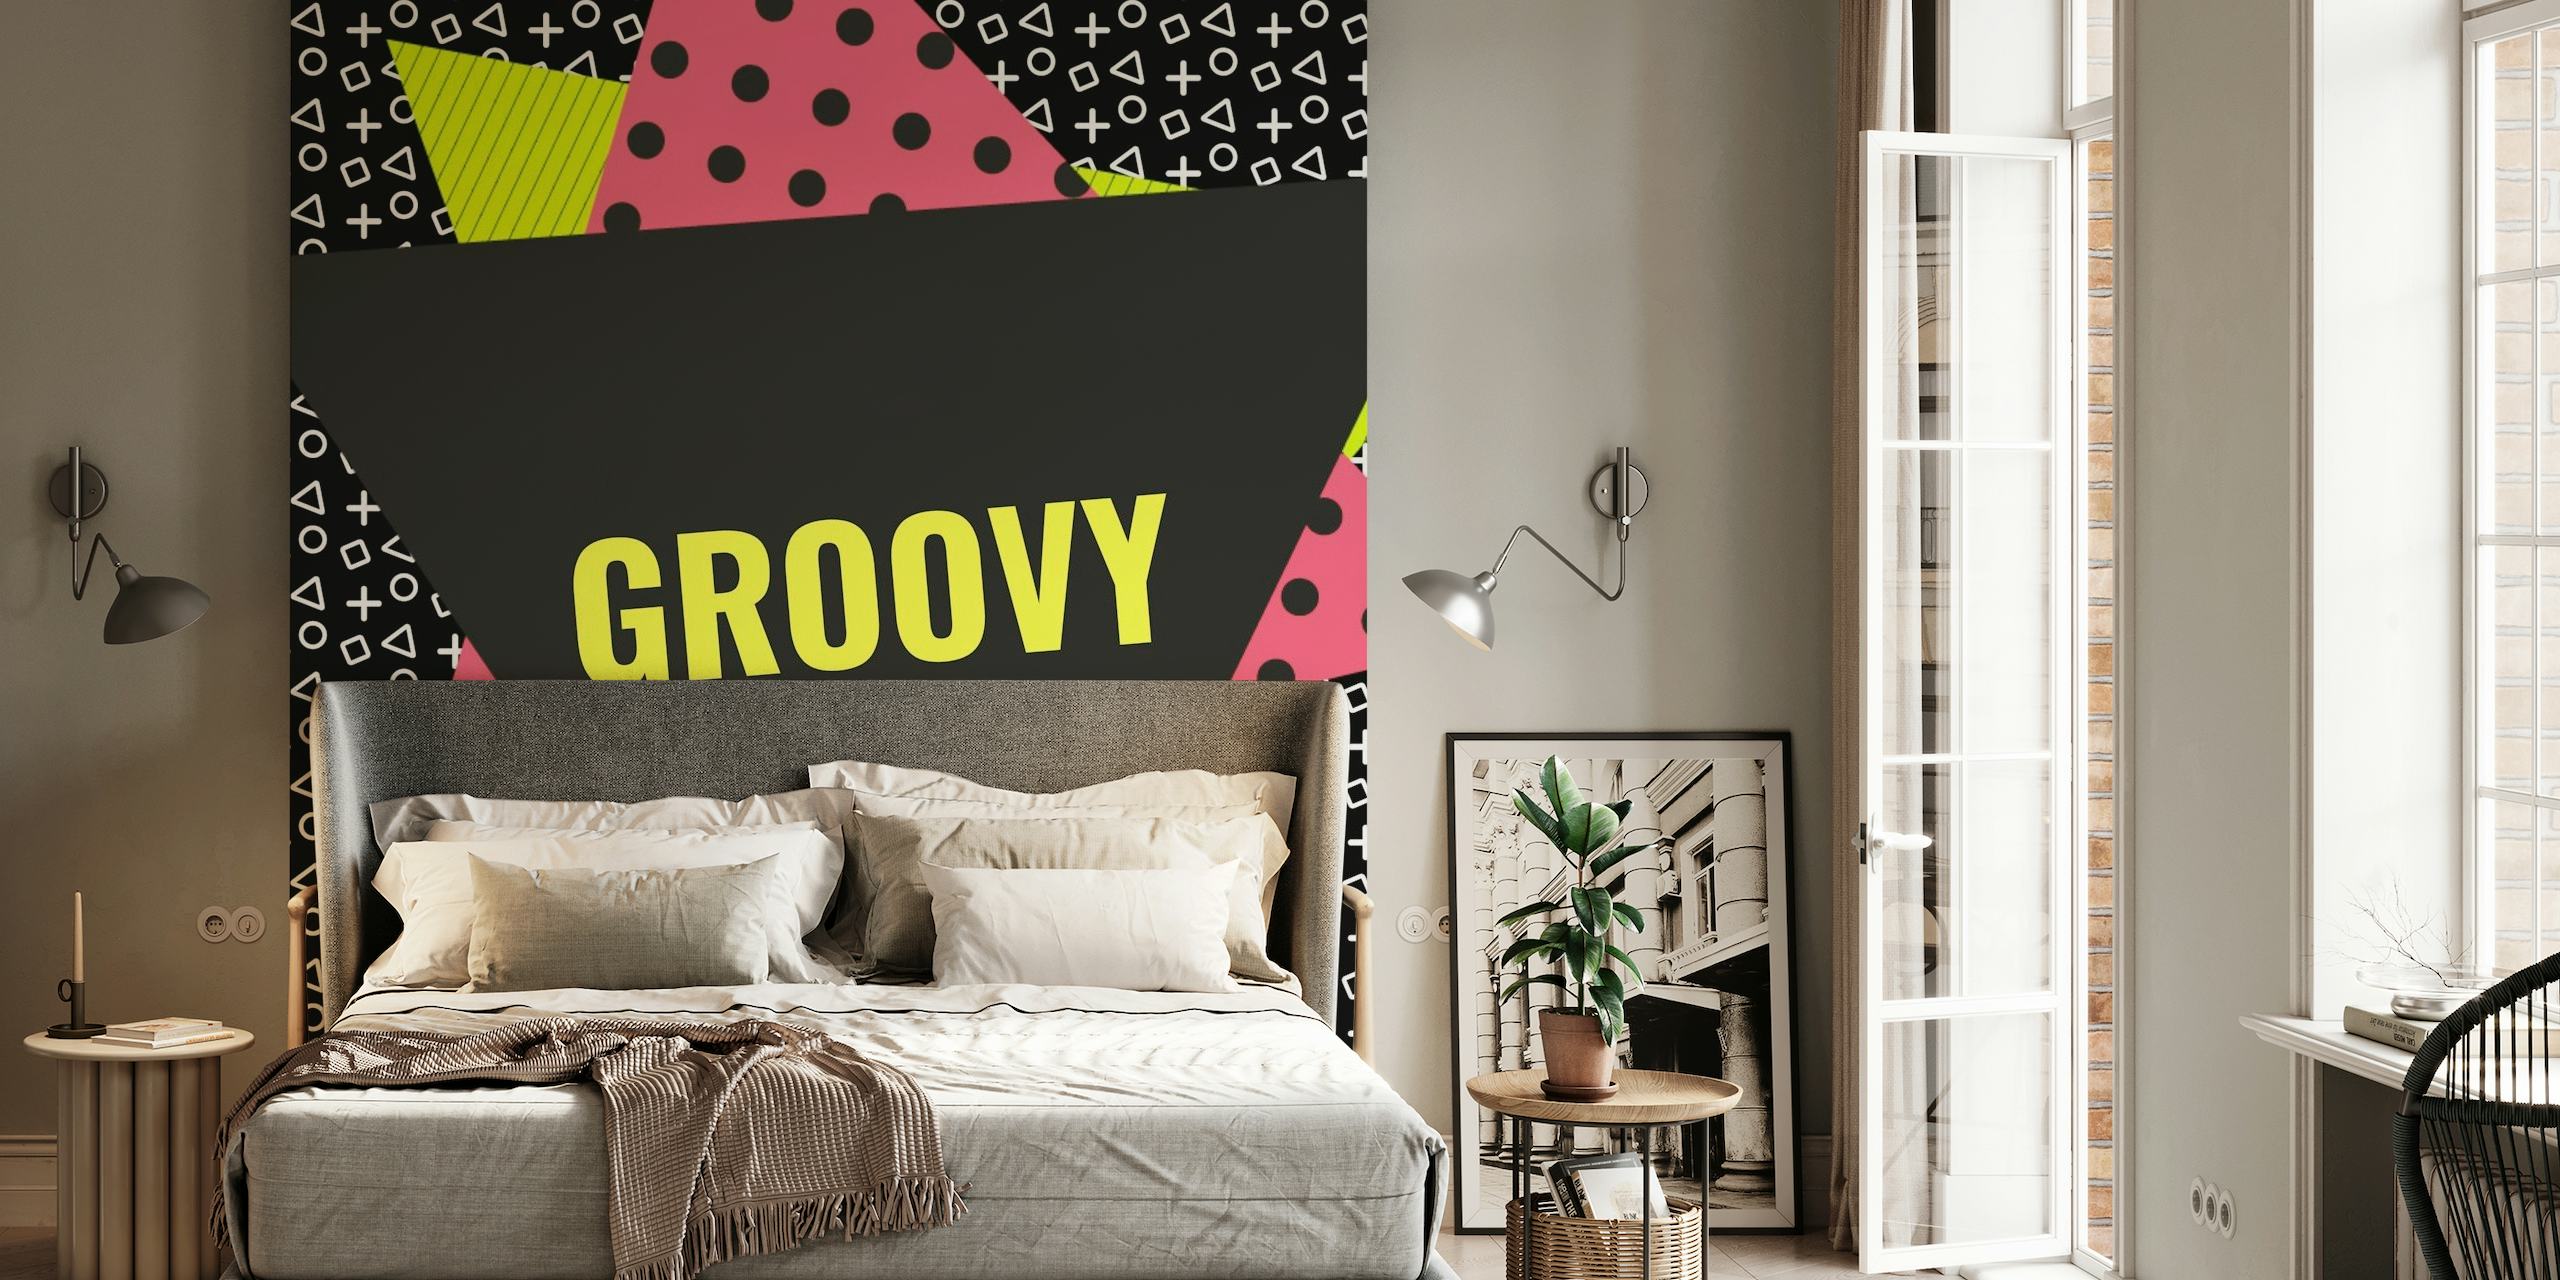 Memphis Style Geometrisk veggmaleri med "Groovy" tekst, abstrakte former og dristige farger